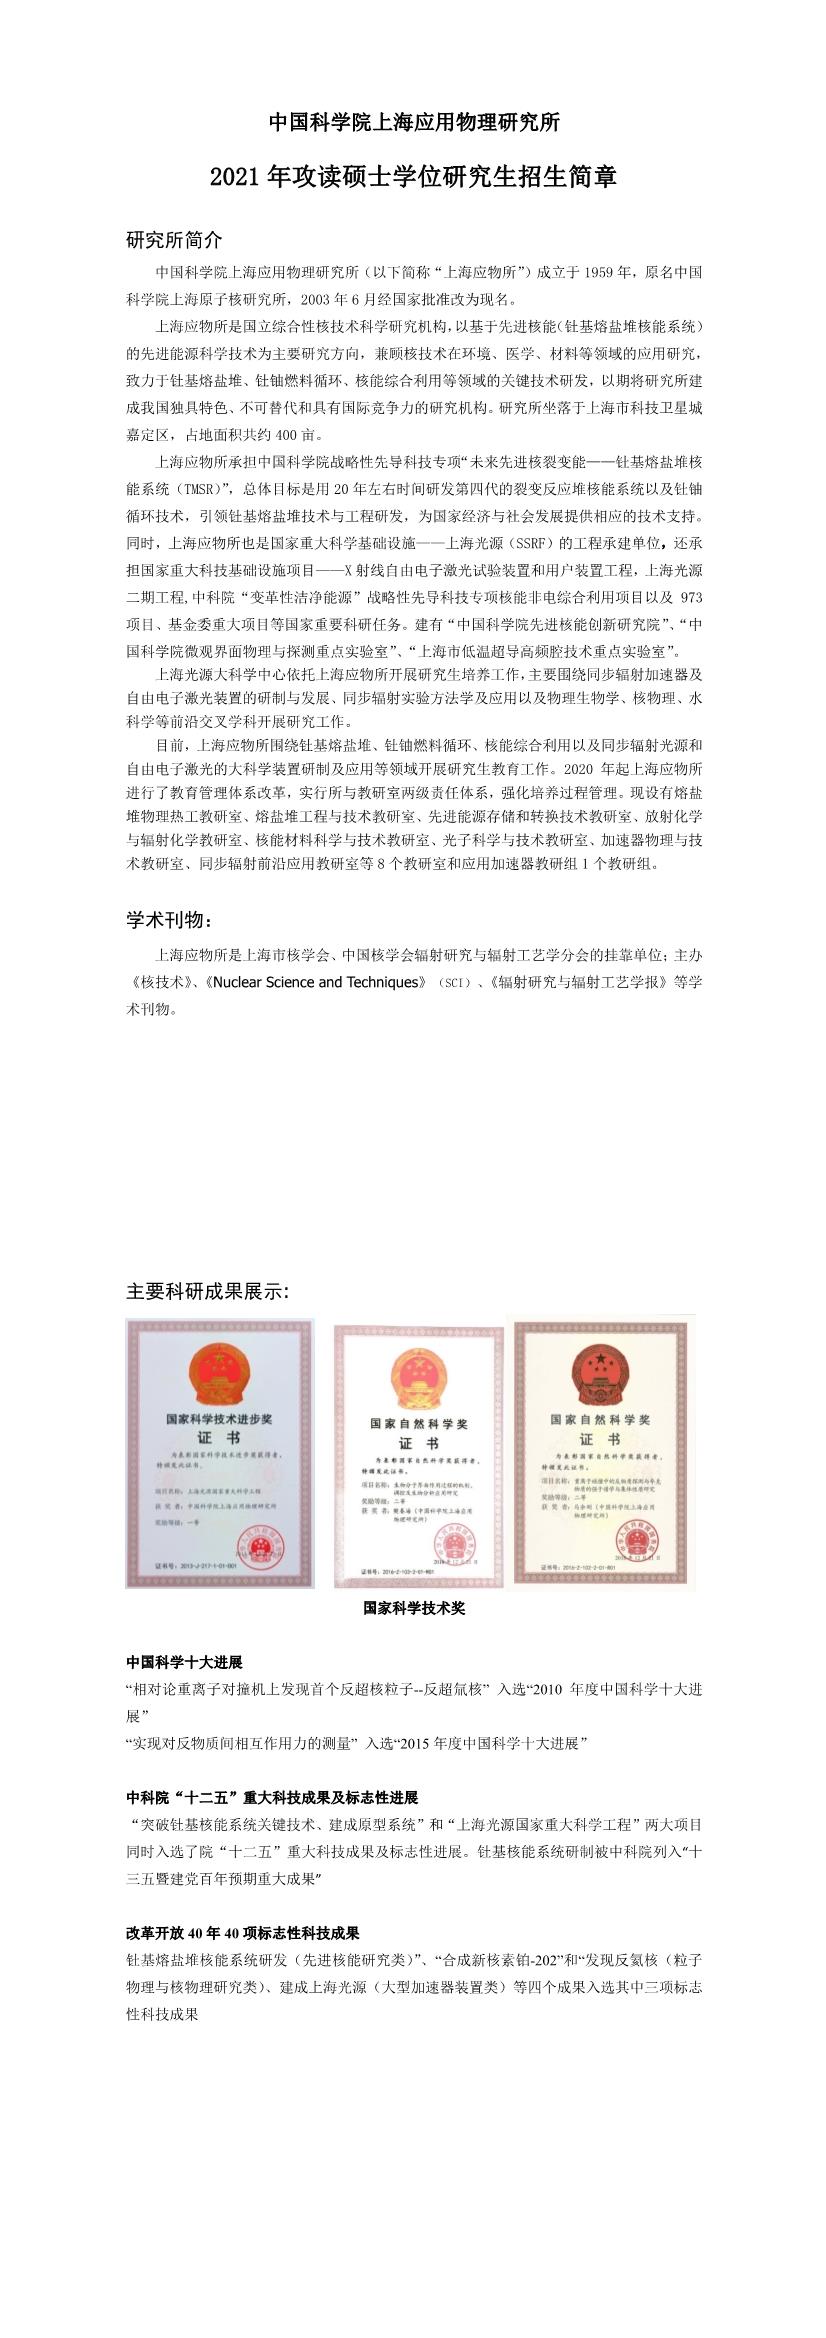 中国科学院上海应用物理研究所2021年硕士研究生招生简章